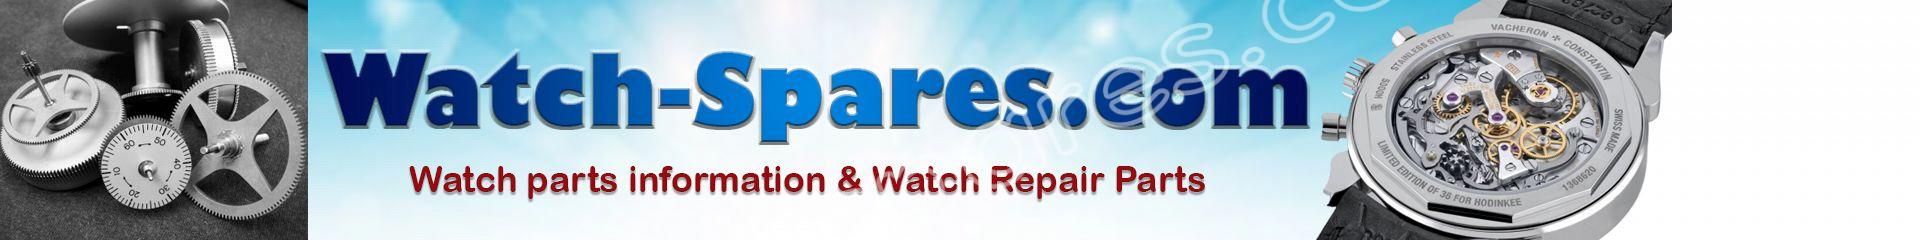 watch-spares.com